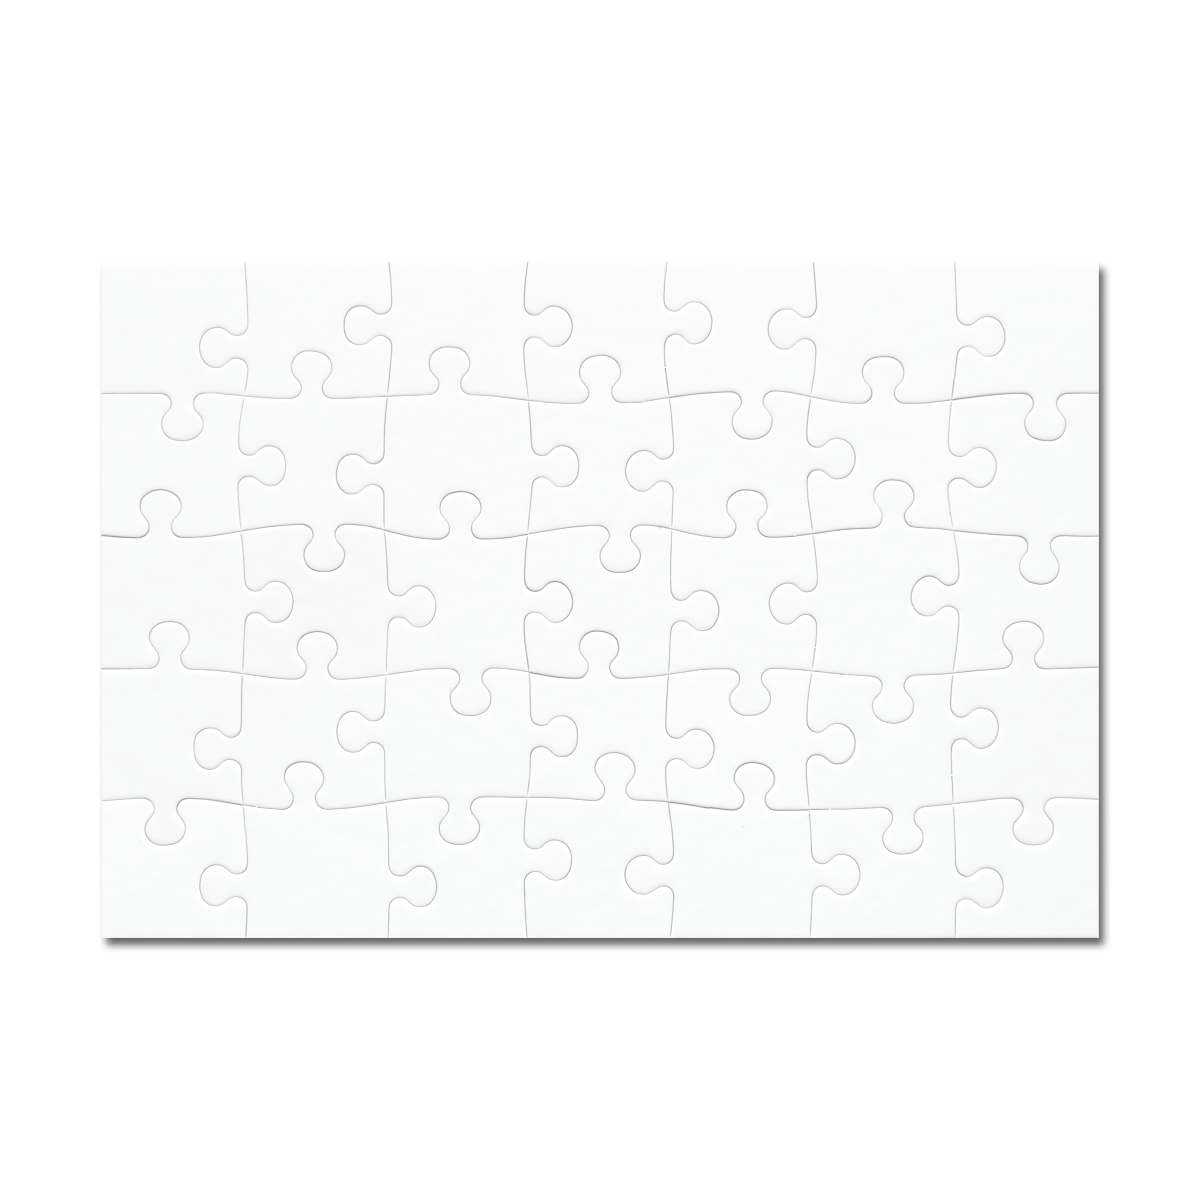 pictoPuzzle De 35 Piezas De Cartón - Puzzle Personalizado Formato A4 